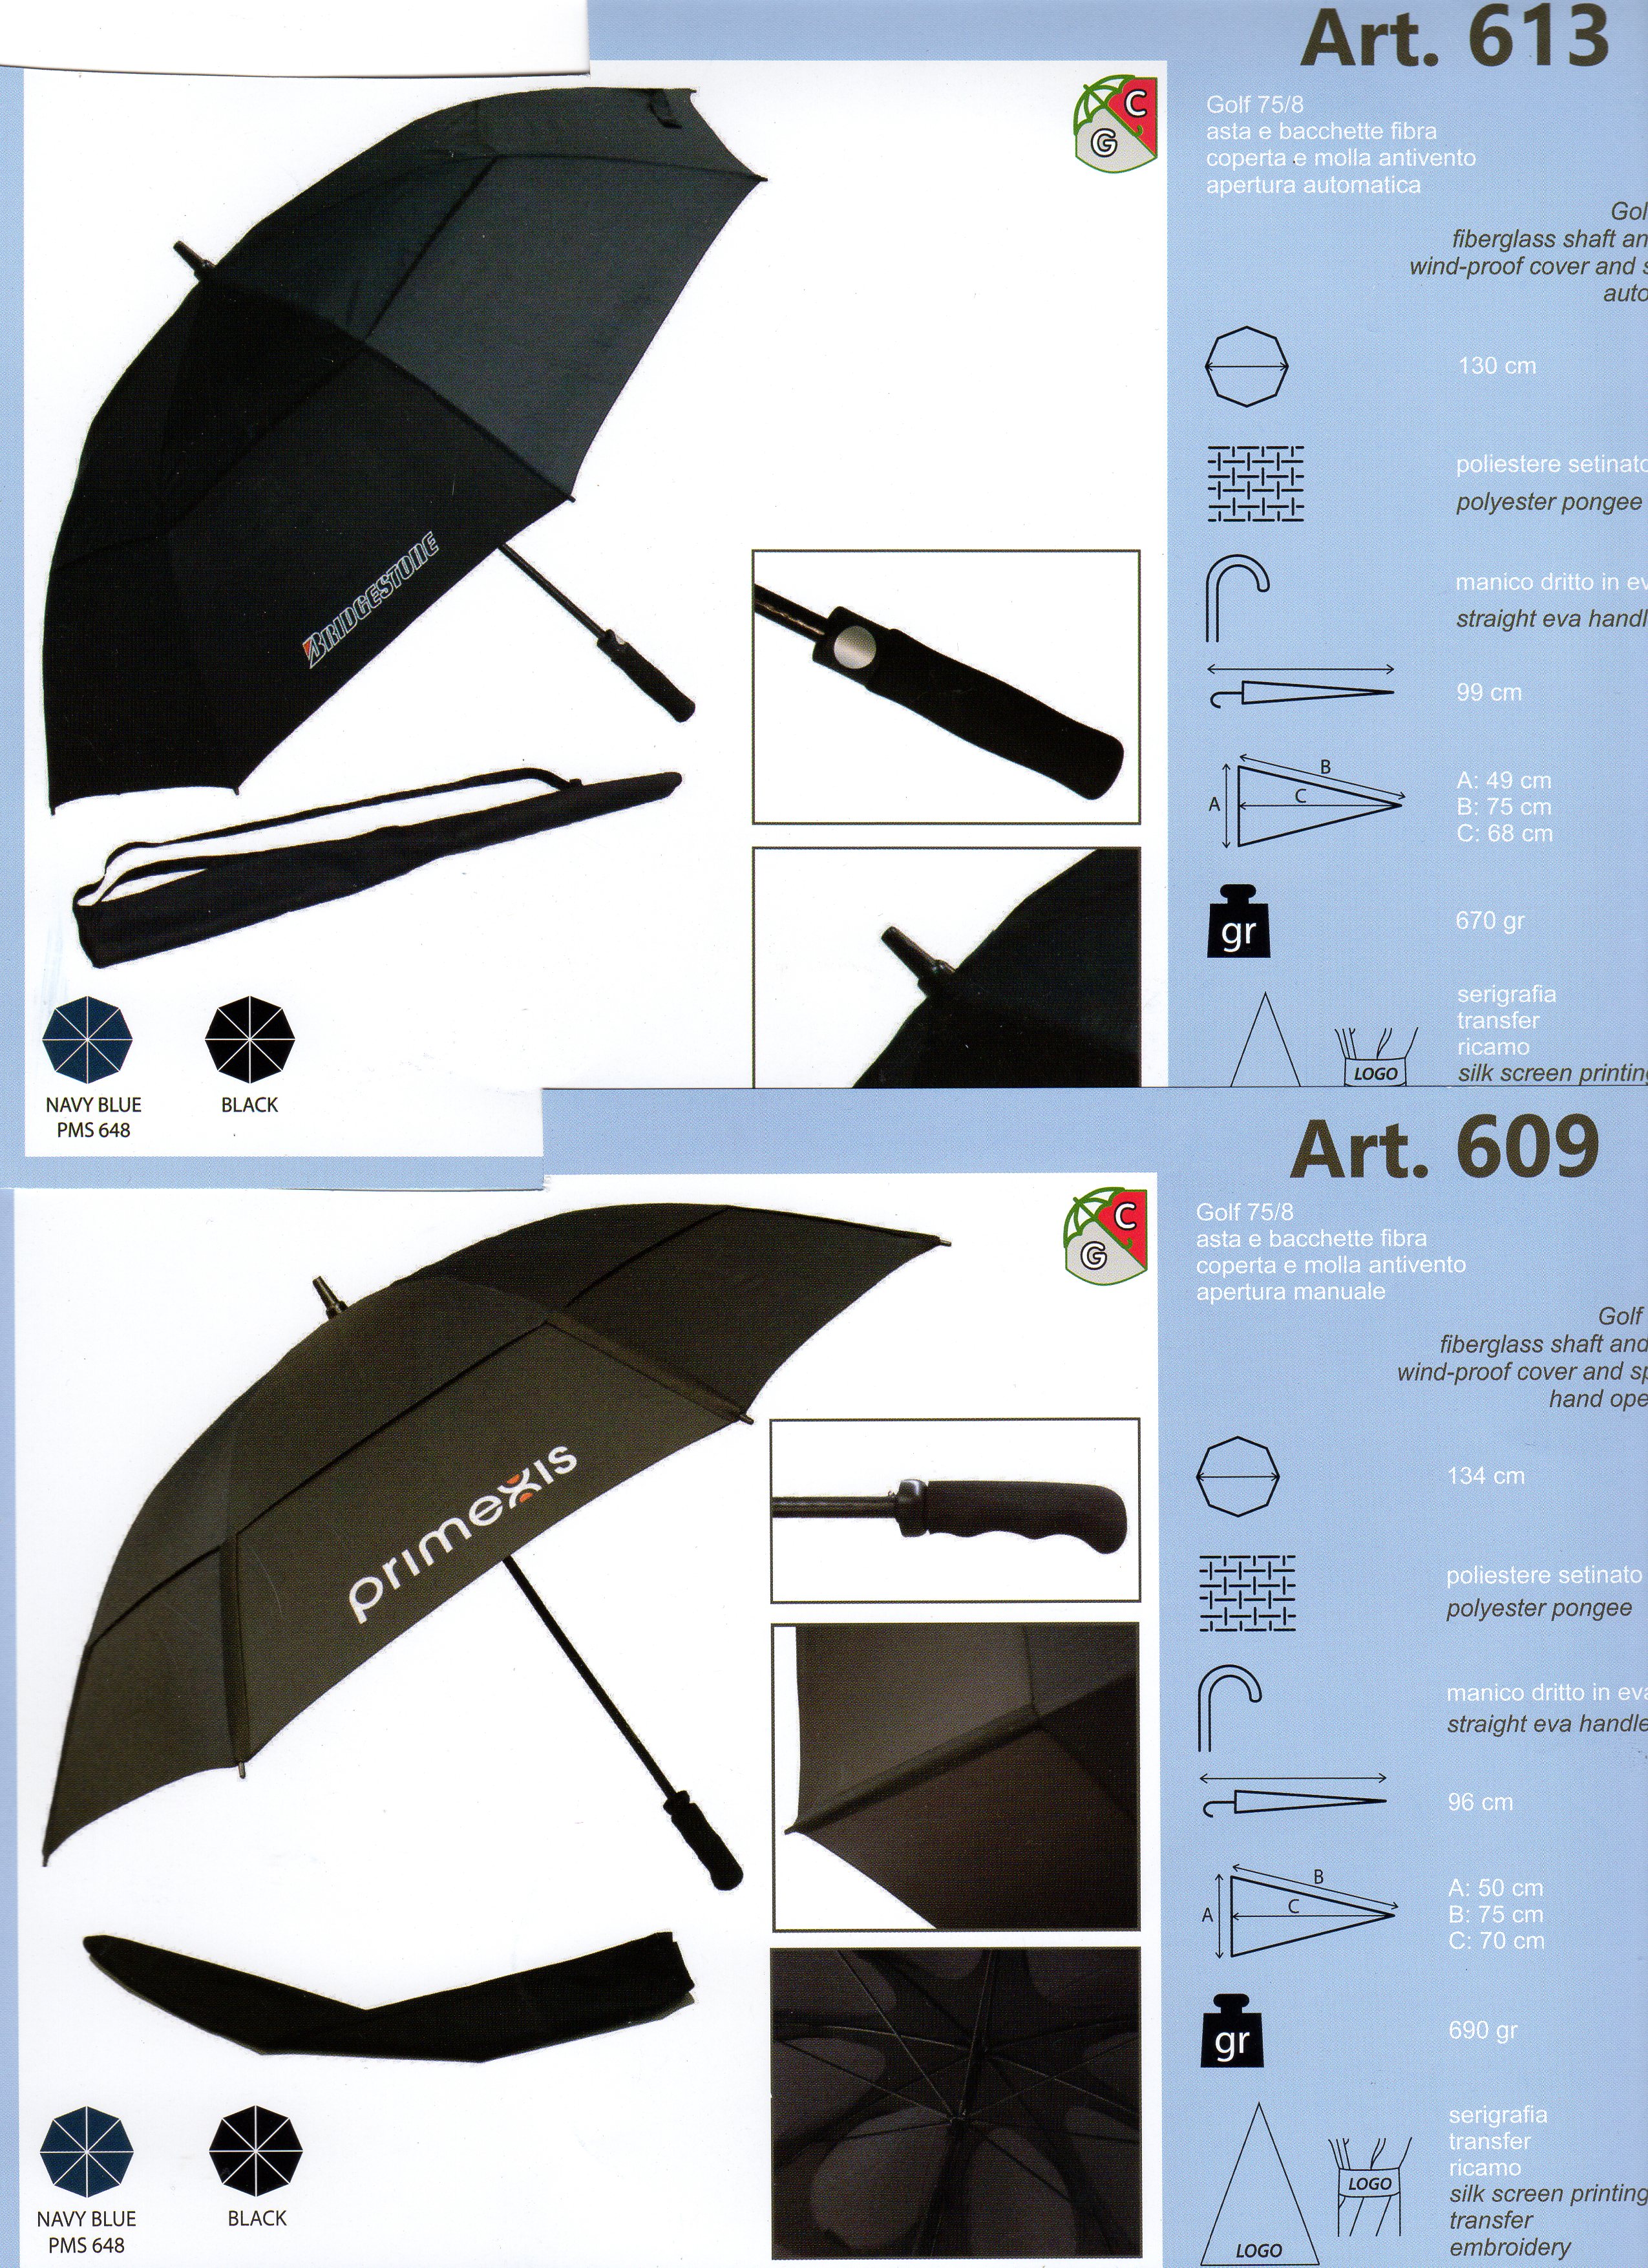 OMBRELLI PROMOZIONALI - Presso di noi puoi trovare qualsiasi soluzione per promuovere la tua azienda.
Dall'ombrello pieghevole, all'ombrello maxi, in ogni colore e caratteristiche richieste.
Personalizzazione con il marchio della vostra azienda applicata su uno o più spicchi dell'ombrello.
Preventivi gratuiti e personalizzati